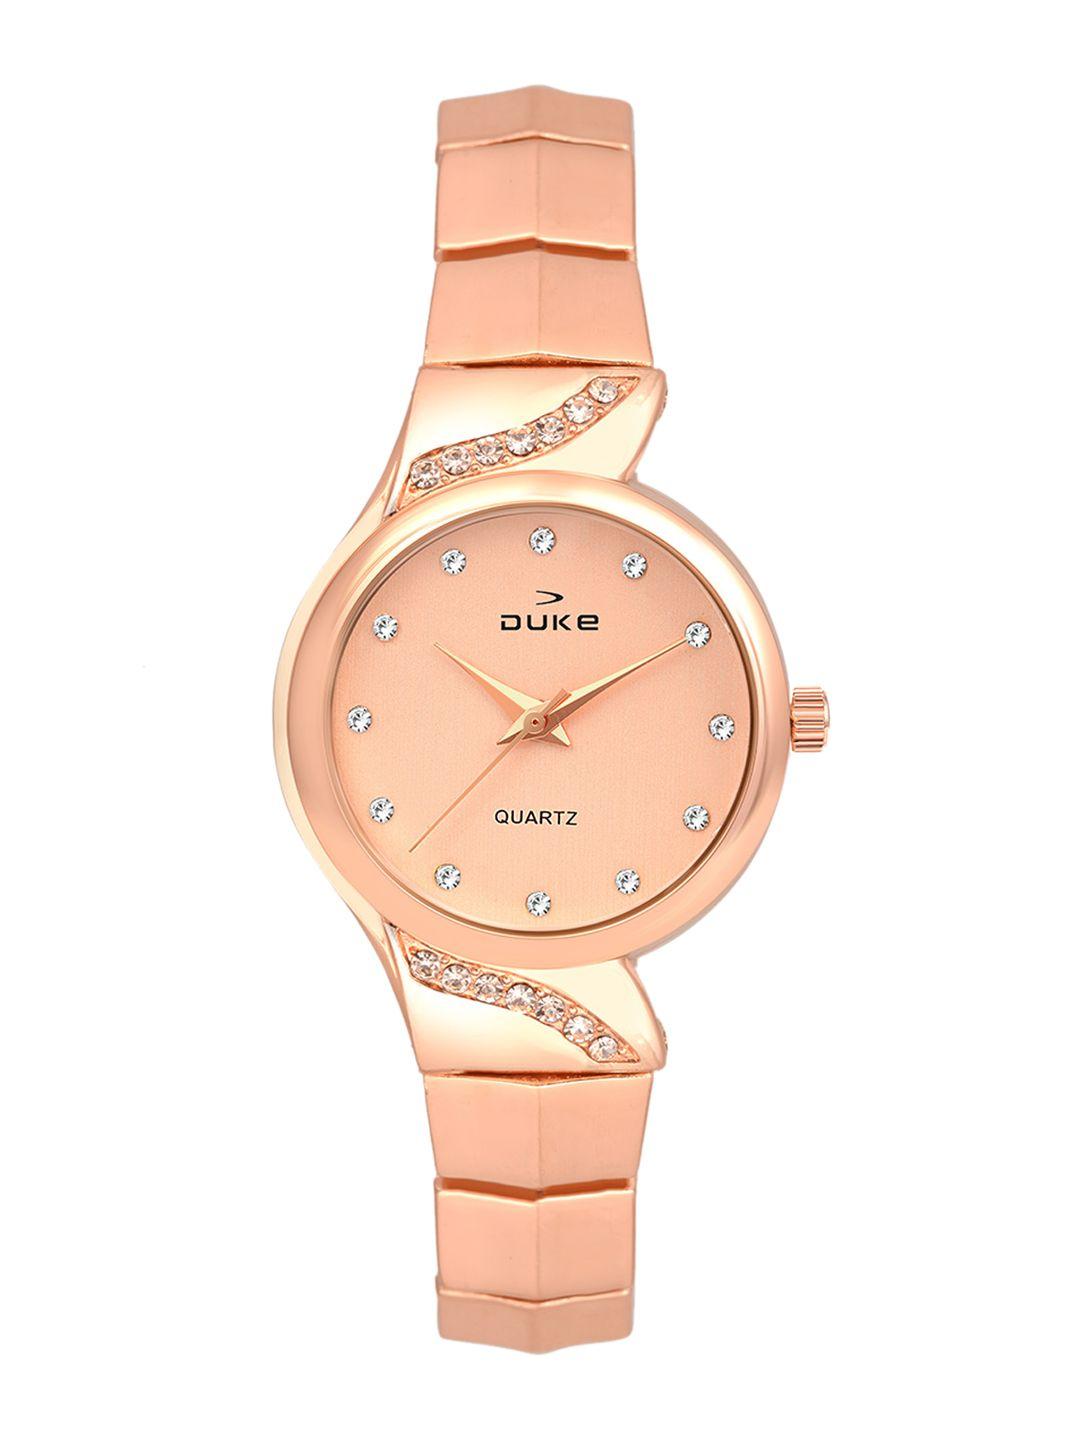 duke-women-rose-gold-toned-analogue-watch-dk7011rw02c